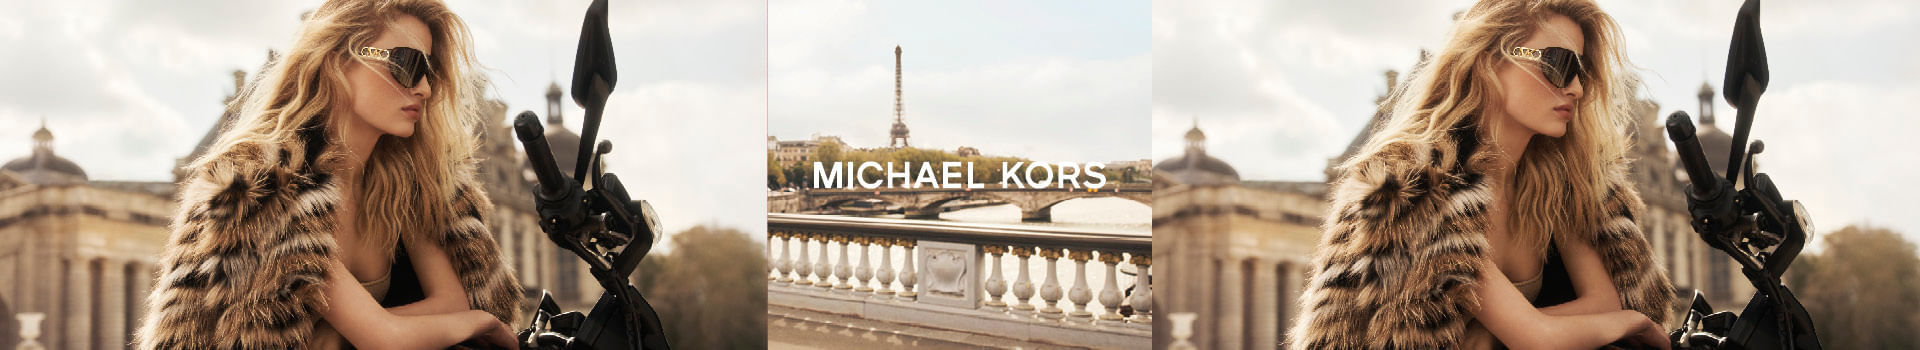 Michael Kors en OPV